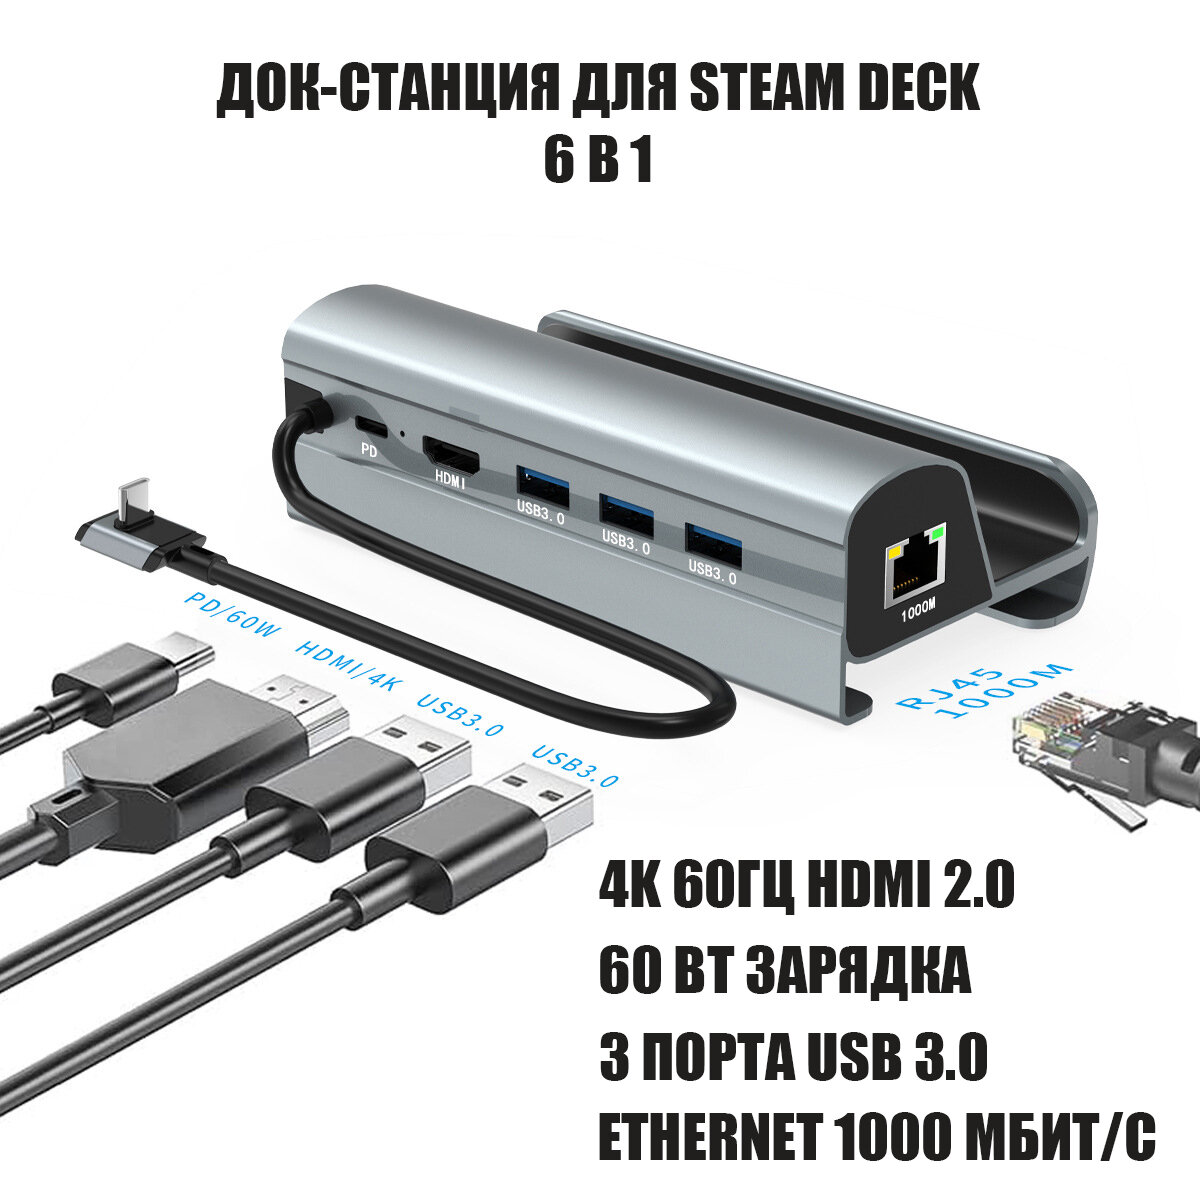 Док станция подставка для Steam Deck зарядное устройство 6 в 1 серая